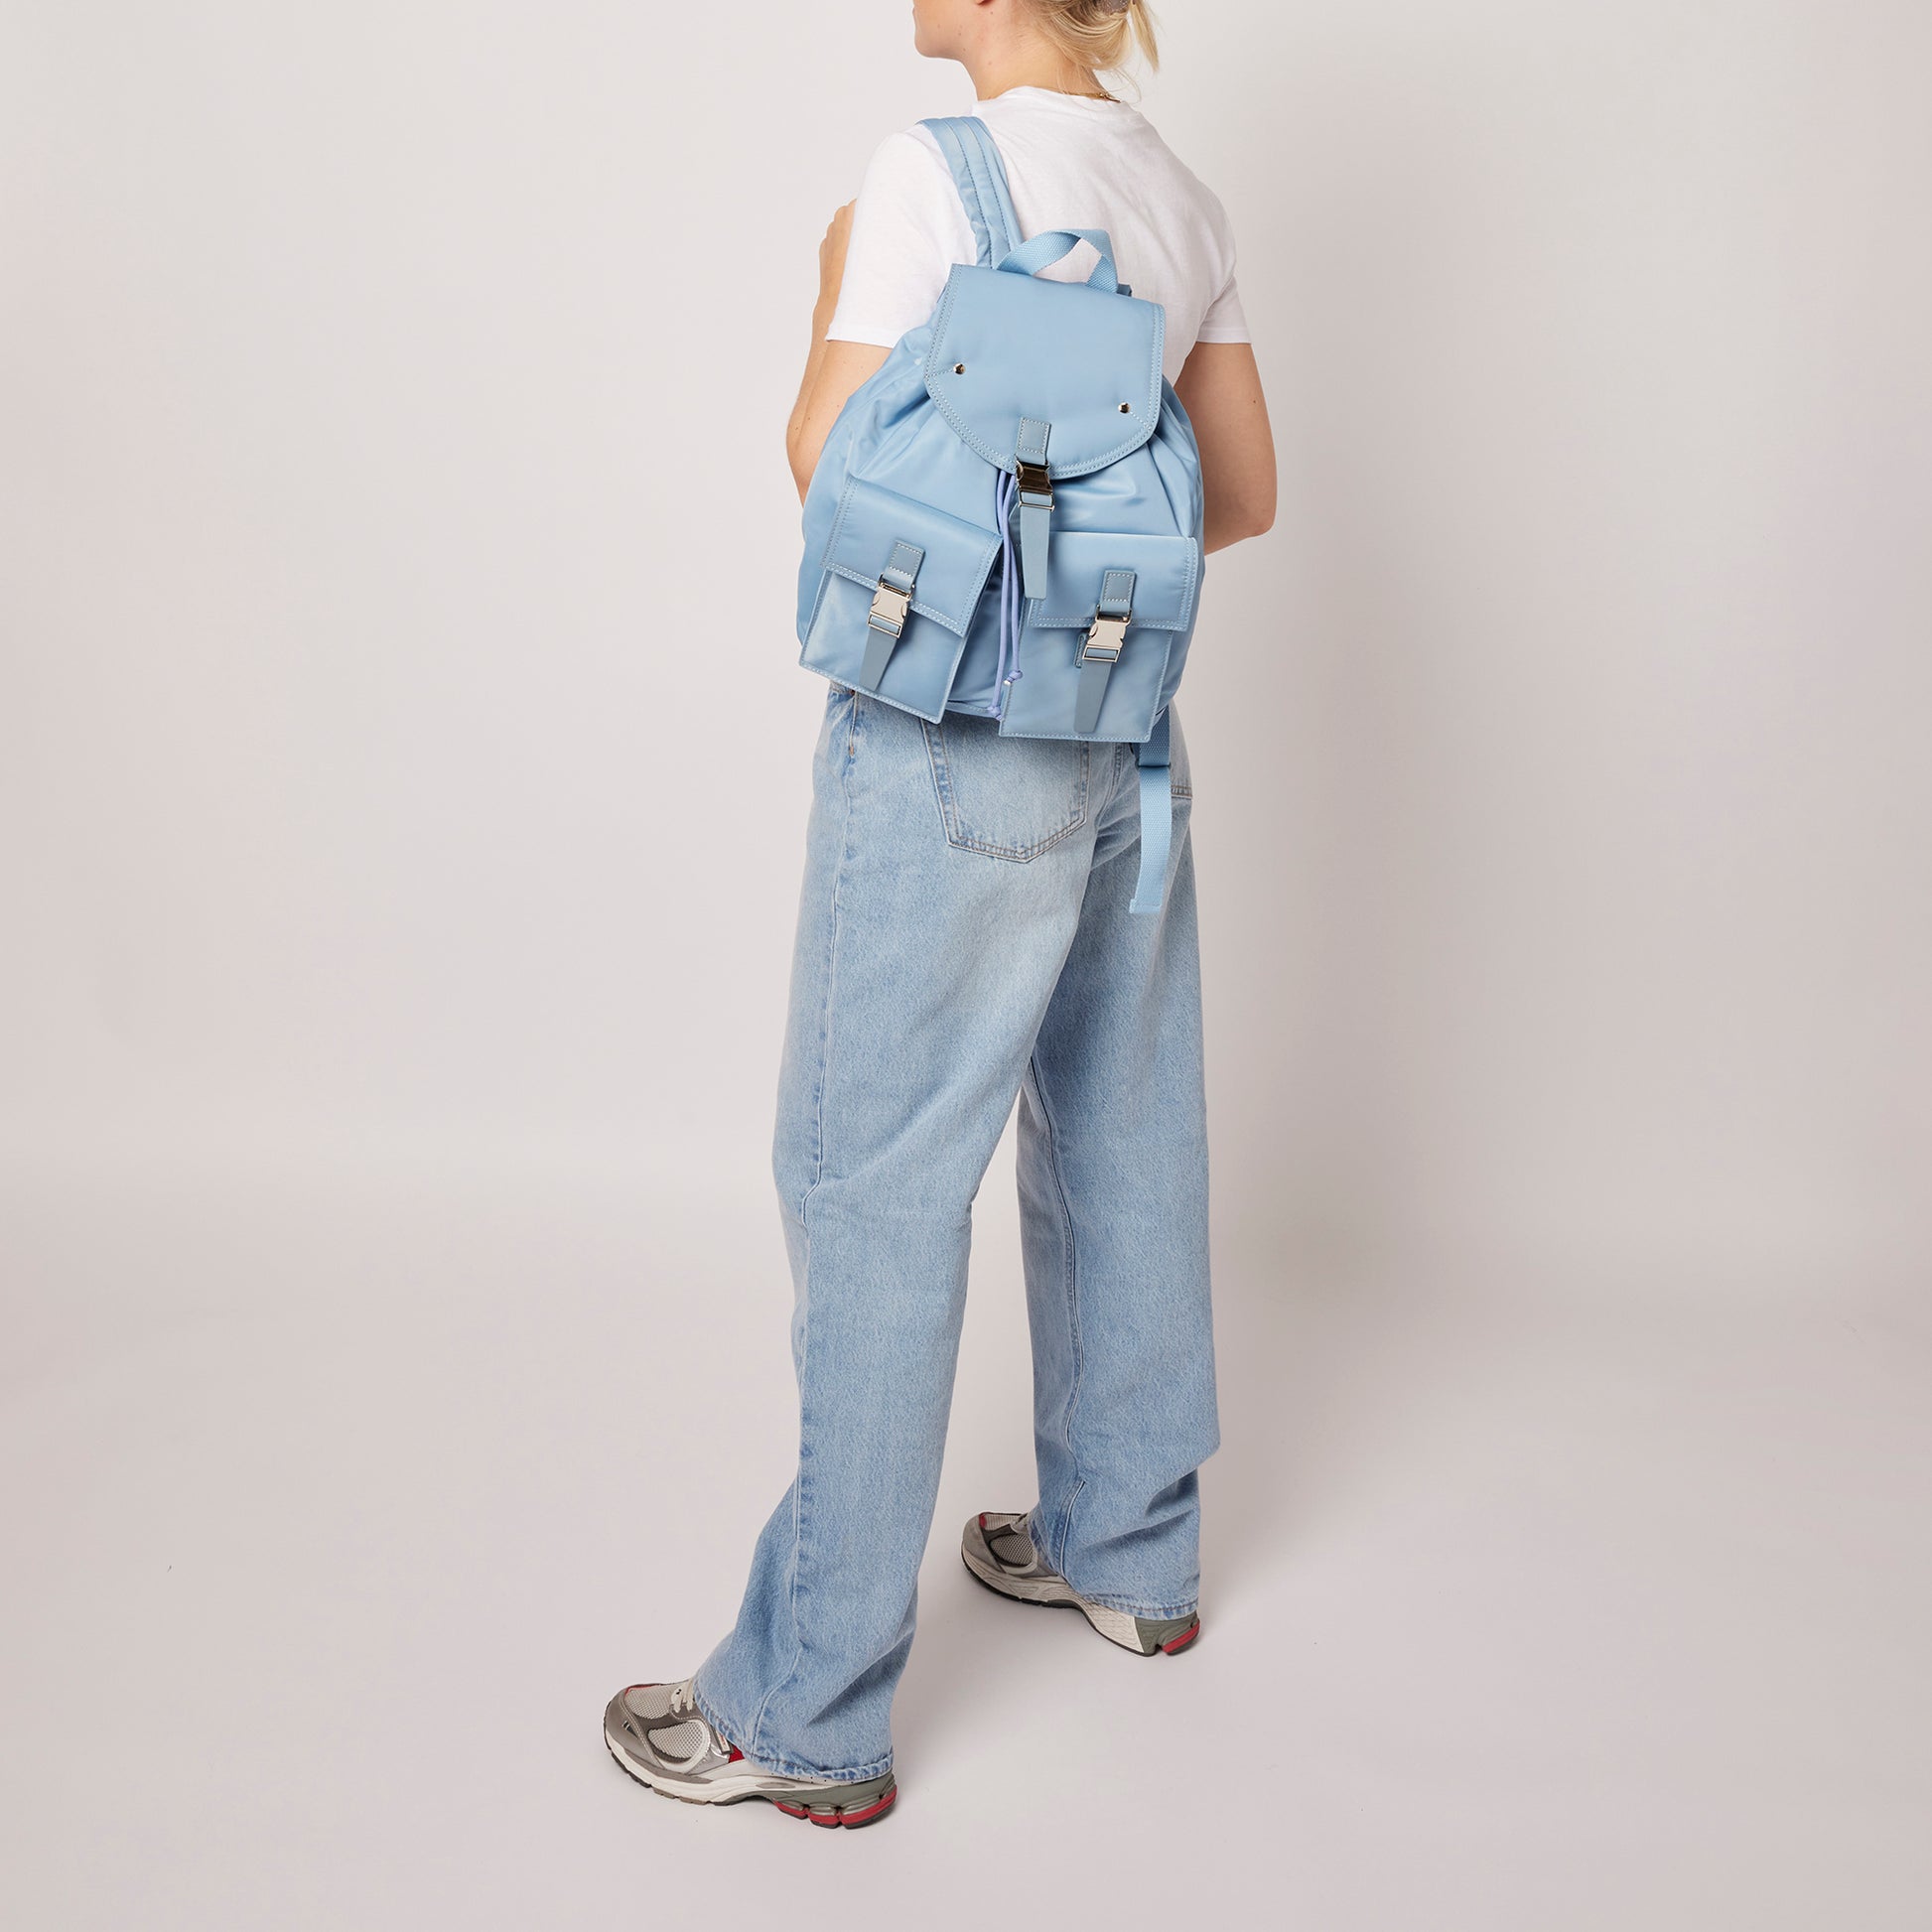 Núnoo backpack recycled nylon light blue Back pack